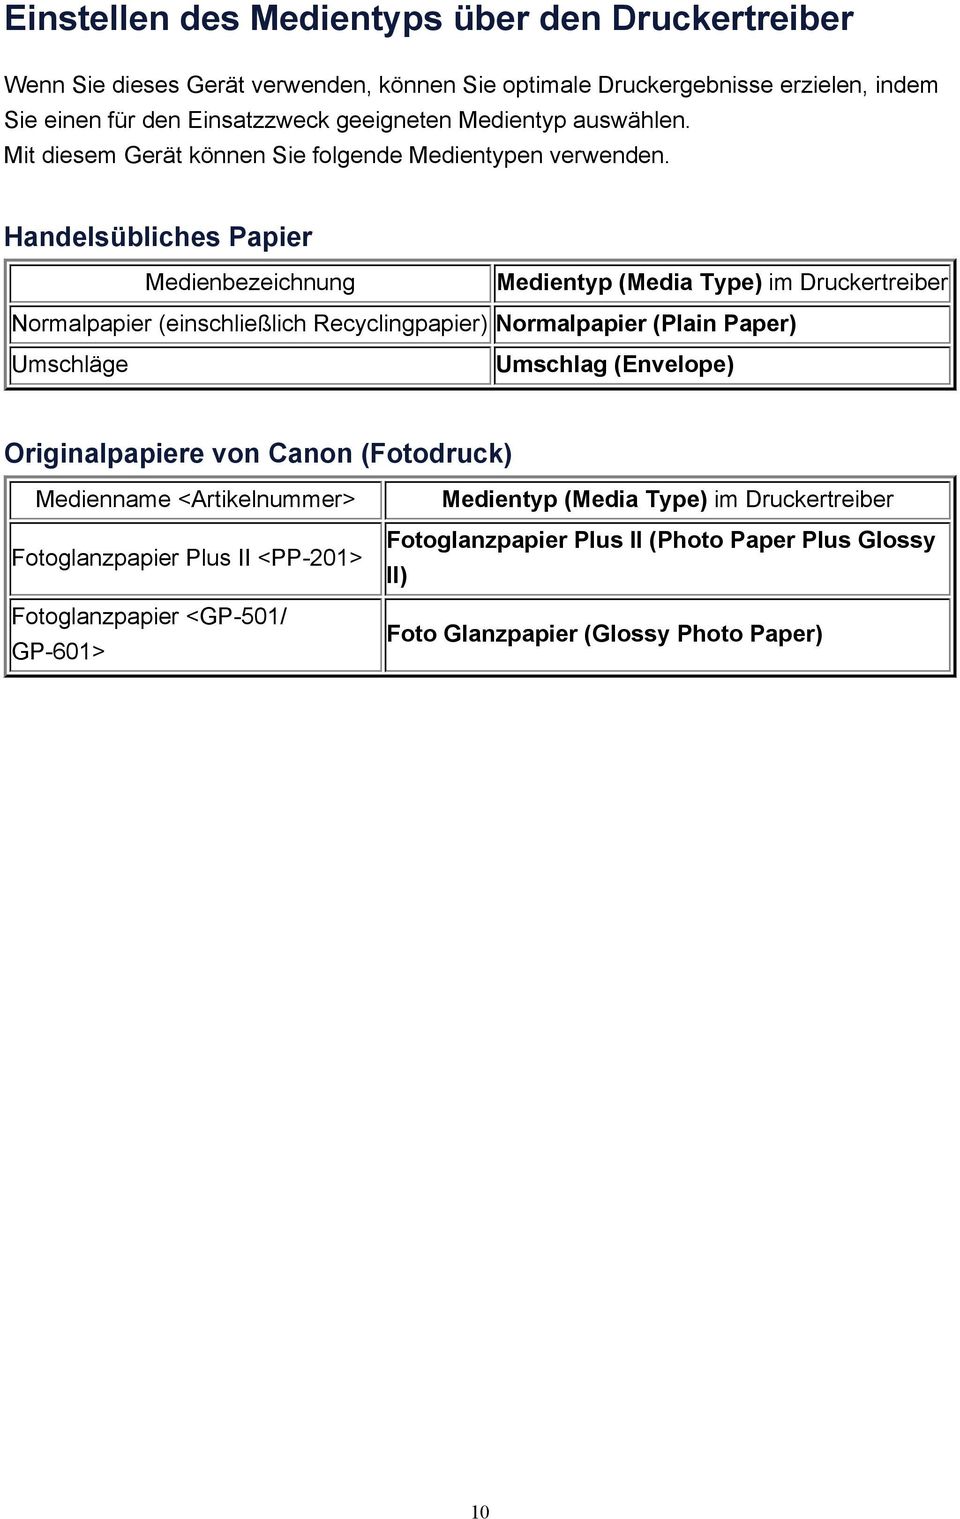 Handelsübliches Papier Medienbezeichnung Medientyp (Media Type) im Druckertreiber Normalpapier (einschließlich Recyclingpapier) Normalpapier (Plain Paper) Umschläge Umschlag